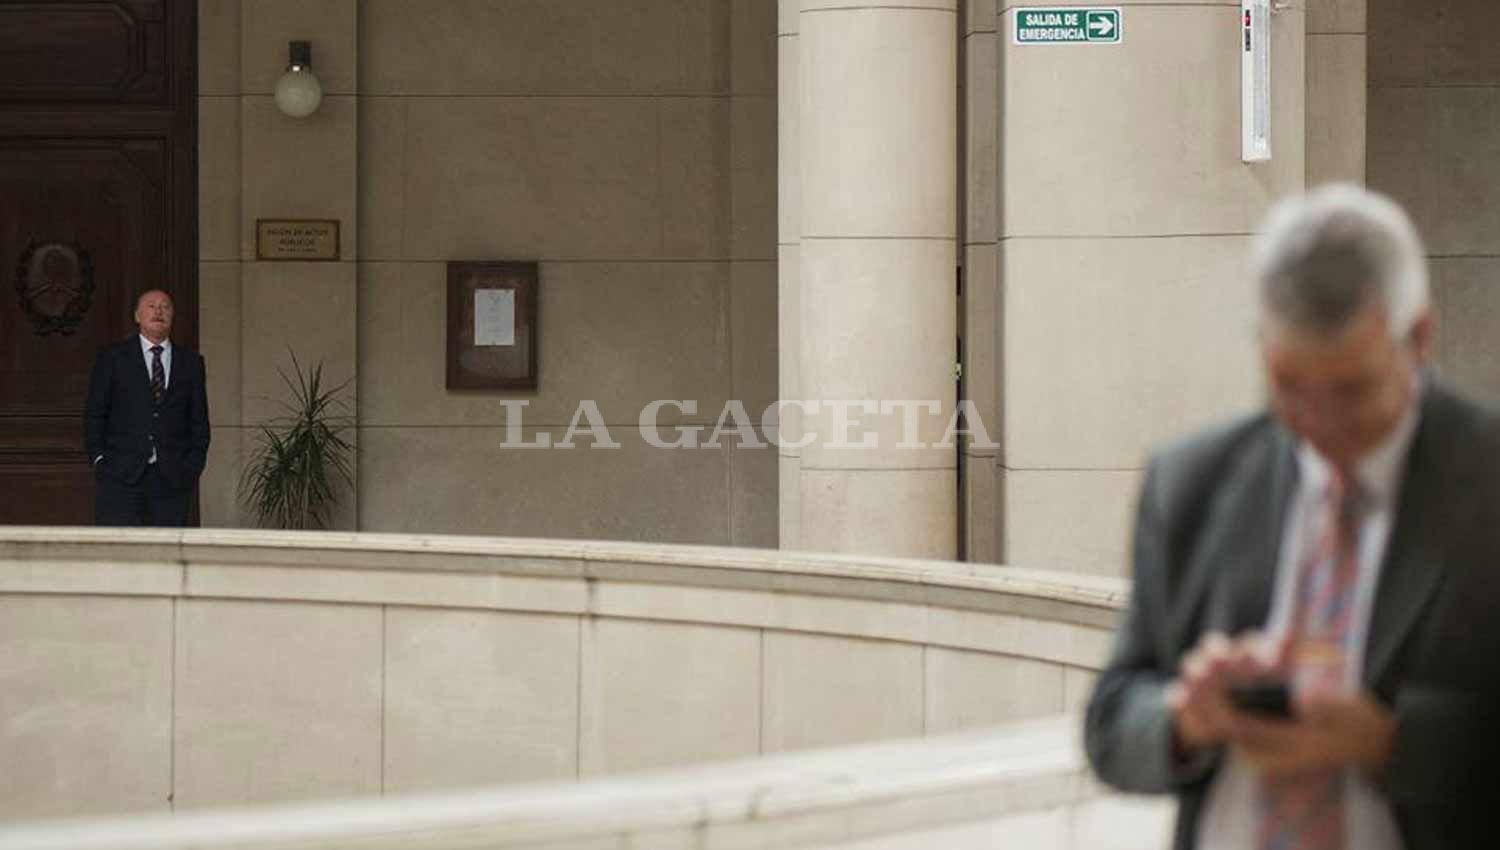 El imputado, Eduardo Di Lella, ex secretario de seguridad de la Provincia, mantiene distancia de los demás acusados durante los cuartos intermedios. LA GACETA / FOTO DE JORGE OLMOS SGROSSO